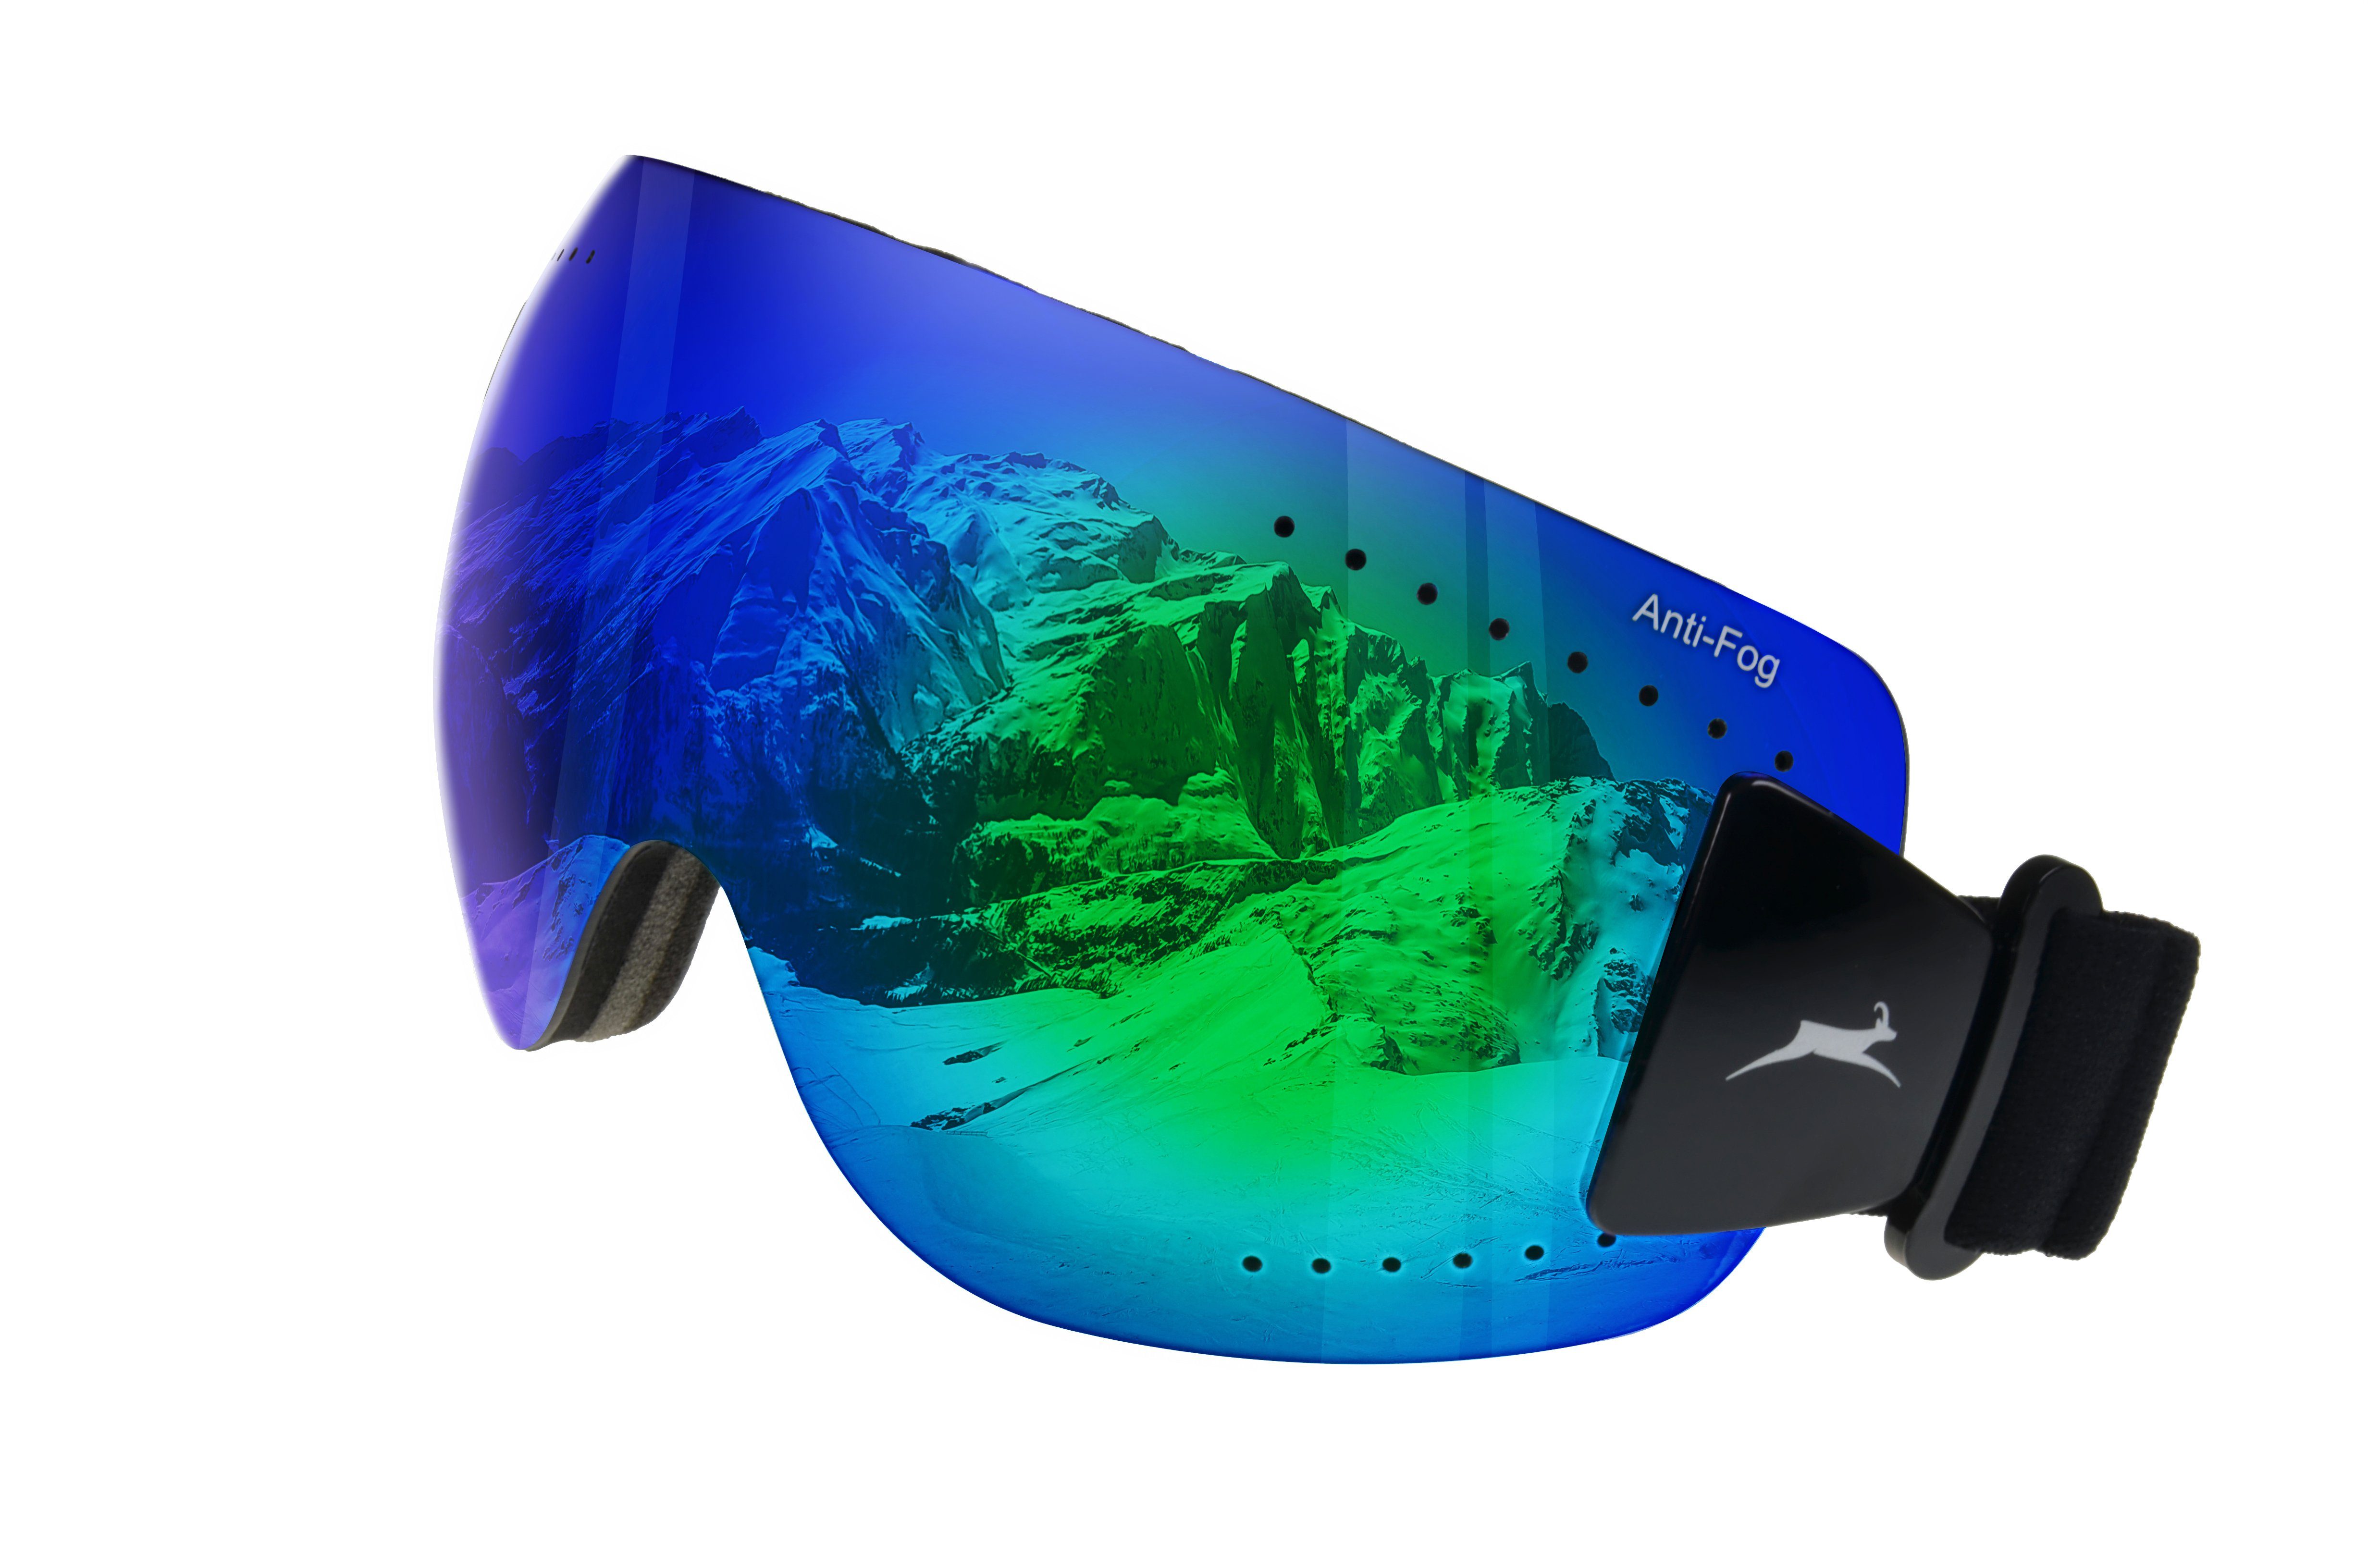 Gamswild Skibrille WS9140 Skibrille Gletscherbrille Snowboardbrille Sonnenbrille Damen Herren Fahrradbrille Unisex, orange, blau, ANTIFOG